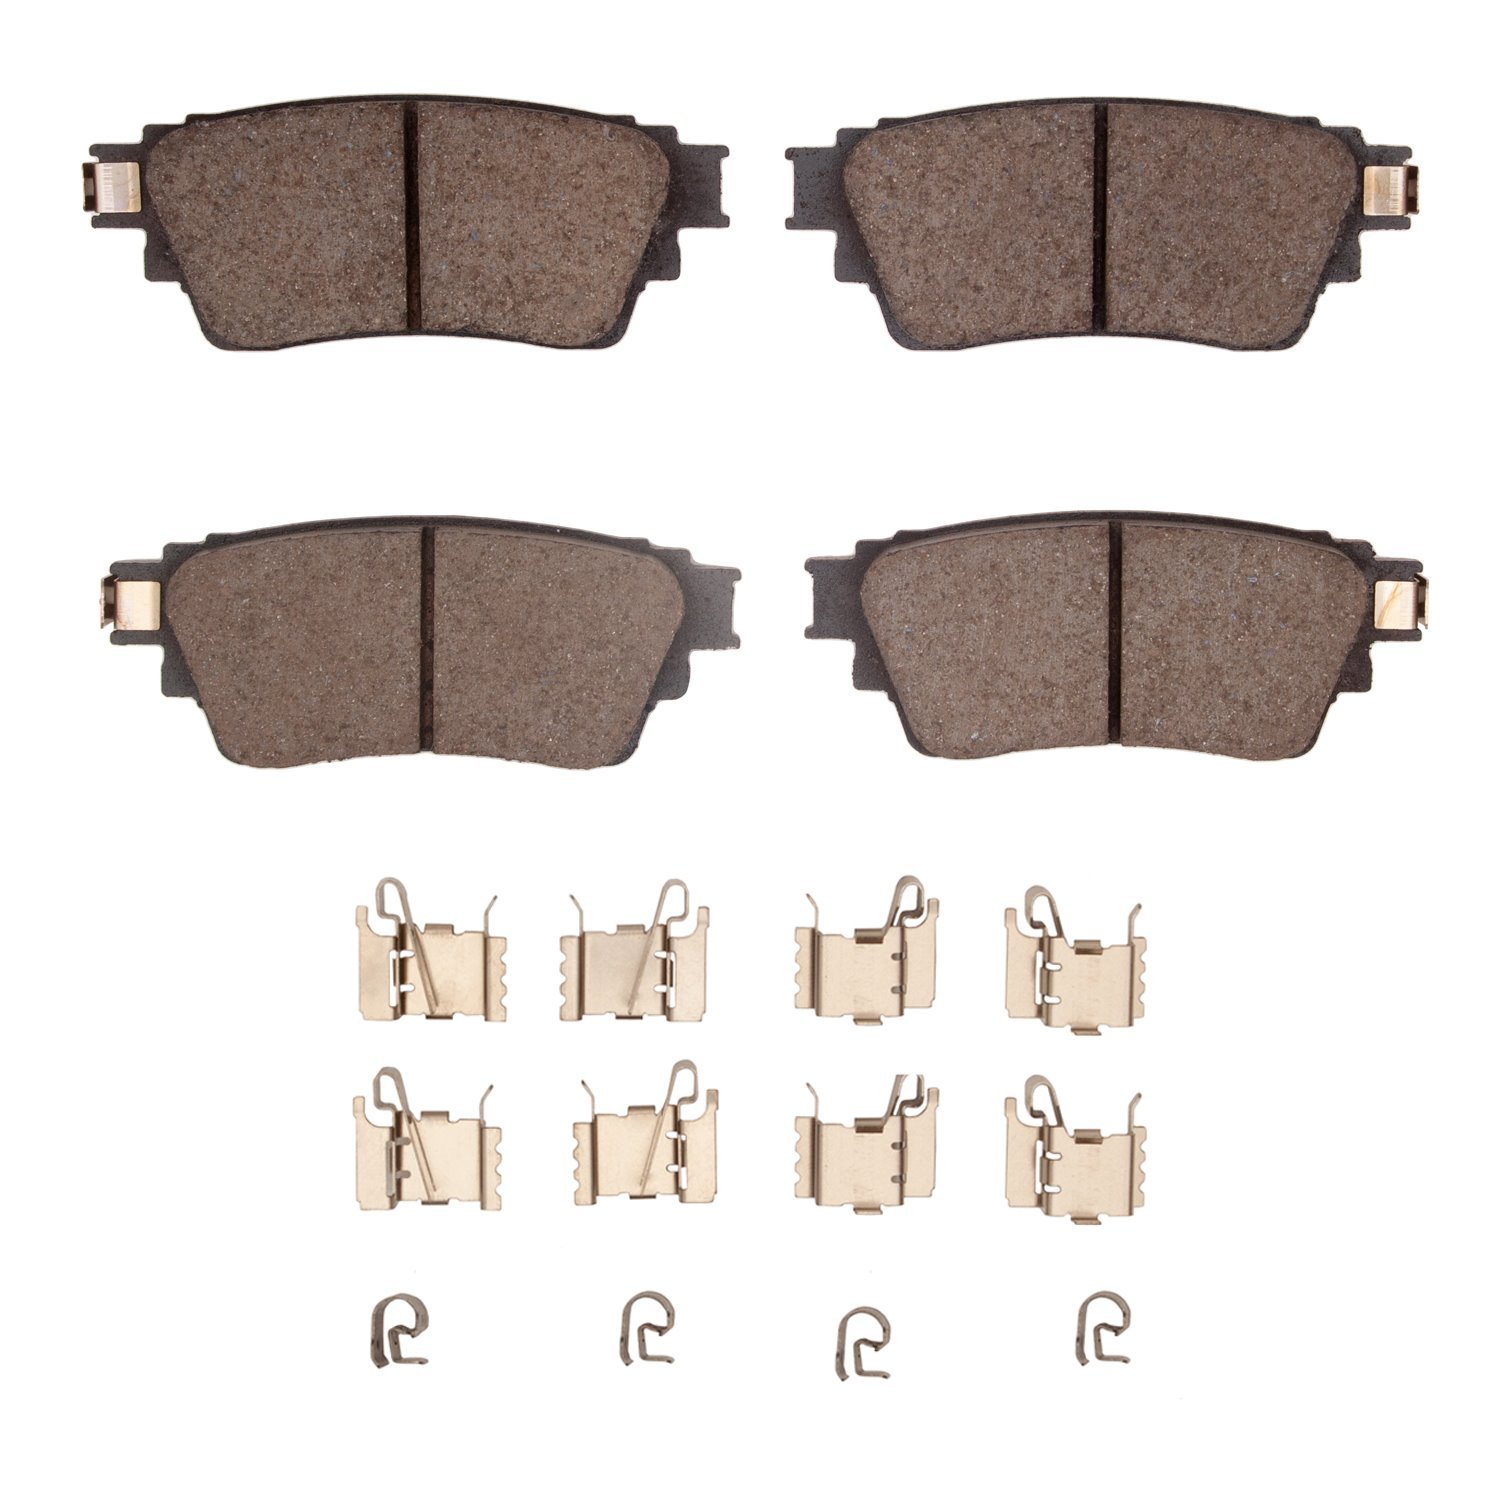 Ceramic Brake Pads & Hardware Kit, Fits Select Mitsubishi, Position: Rear